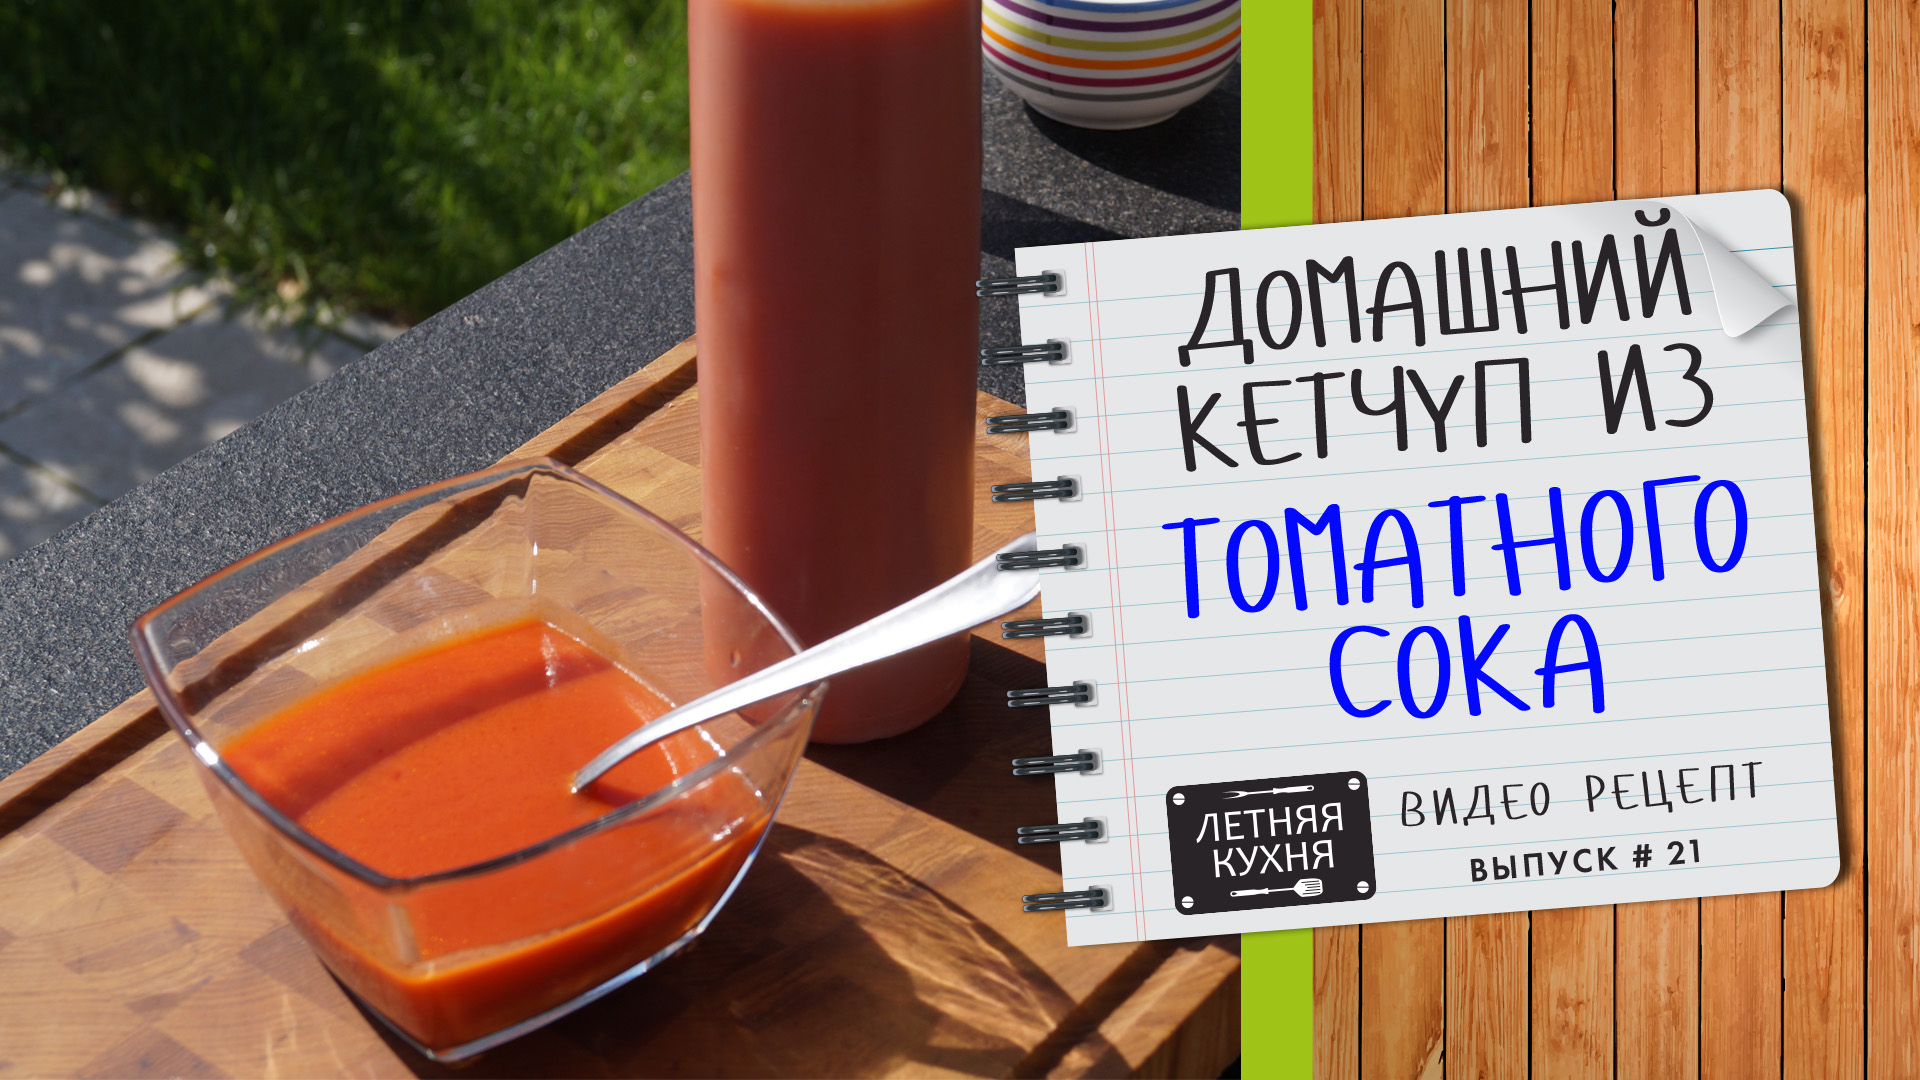 Вкусный ДОМАШНИЙ КЕТЧУП из томатного сока без консервантов Видео рецепт приготовления на мангале